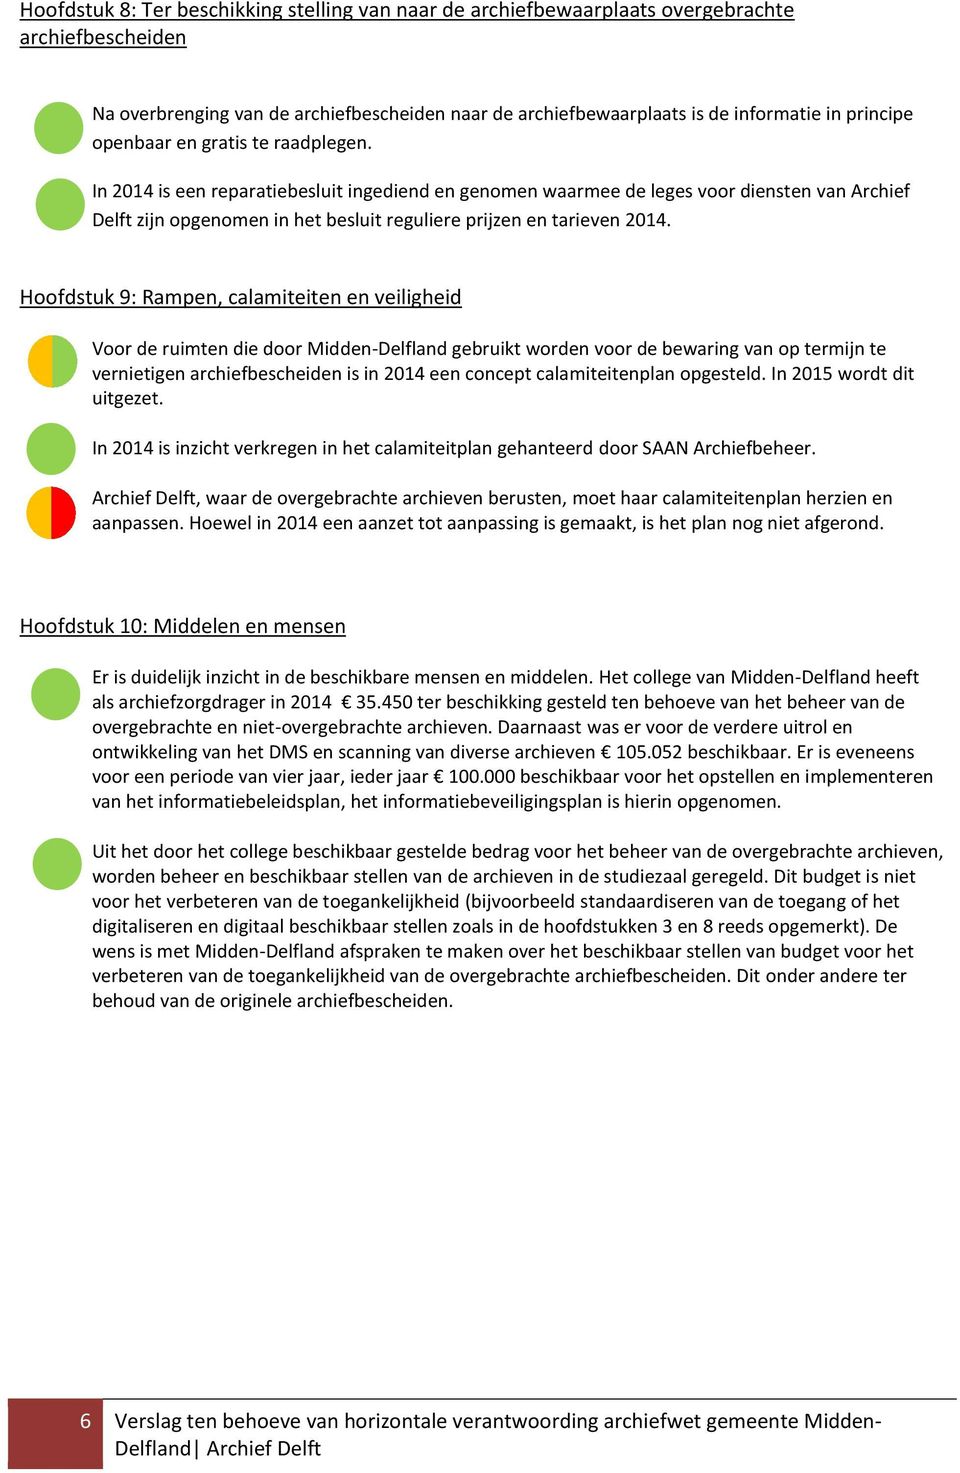 In 2014 is een reparatiebesluit ingediend en genomen waarmee de leges voor diensten van Archief Delft zijn opgenomen in het besluit reguliere prijzen en tarieven 2014.